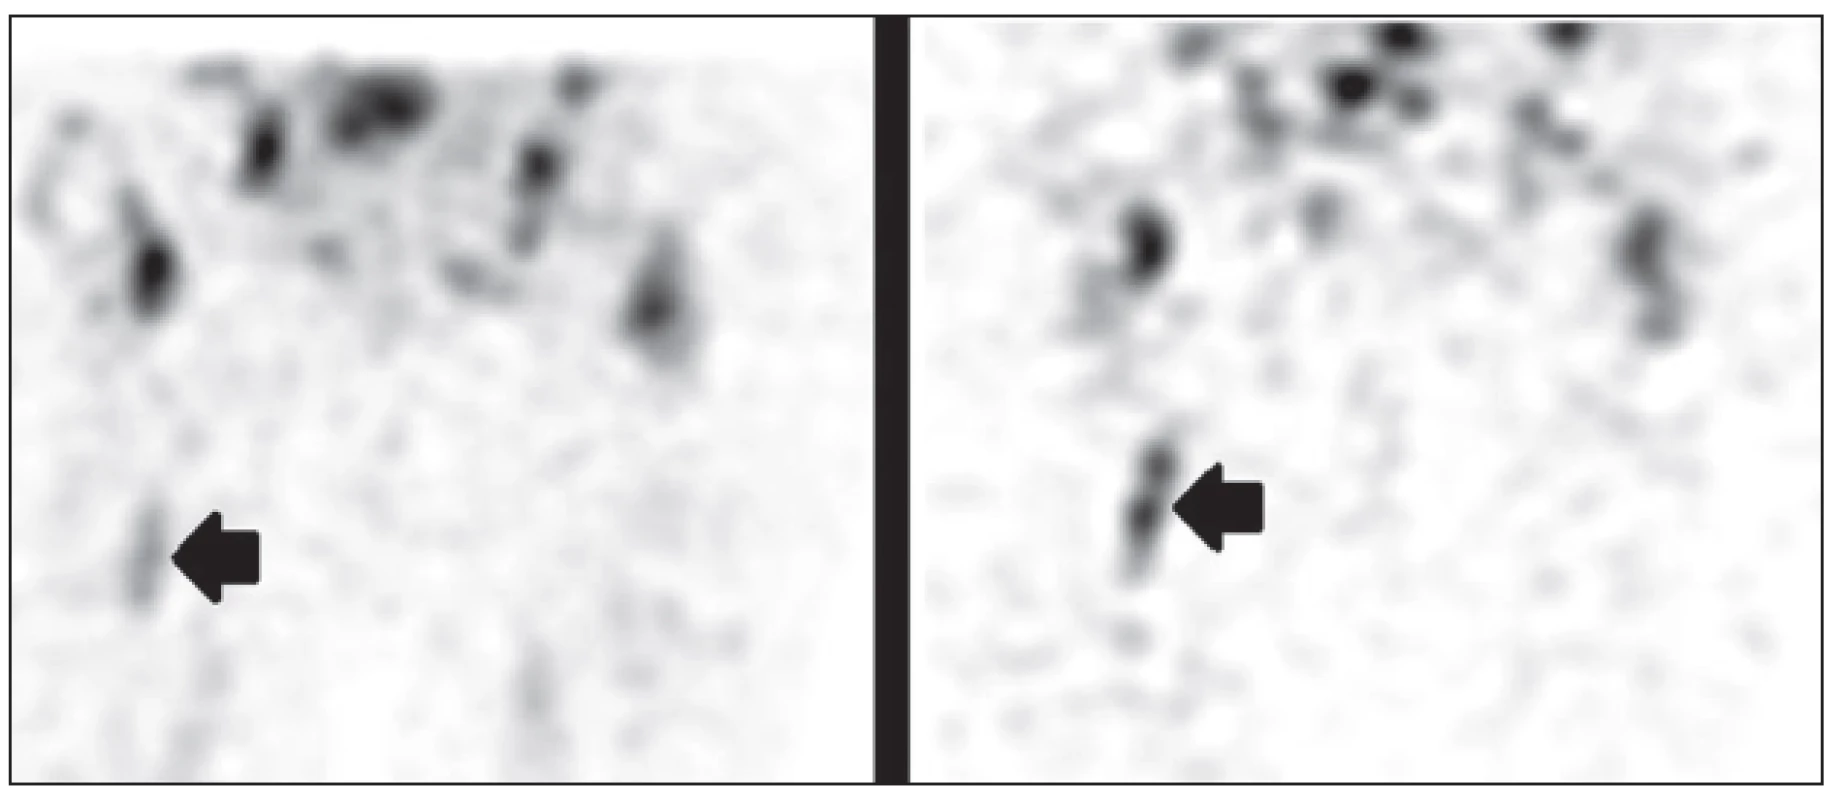 <i>Vyšetření značenými leukocyty, obrazy SPECT časné (vlevo) a pozdní po 24 hod (vpravo).</i>